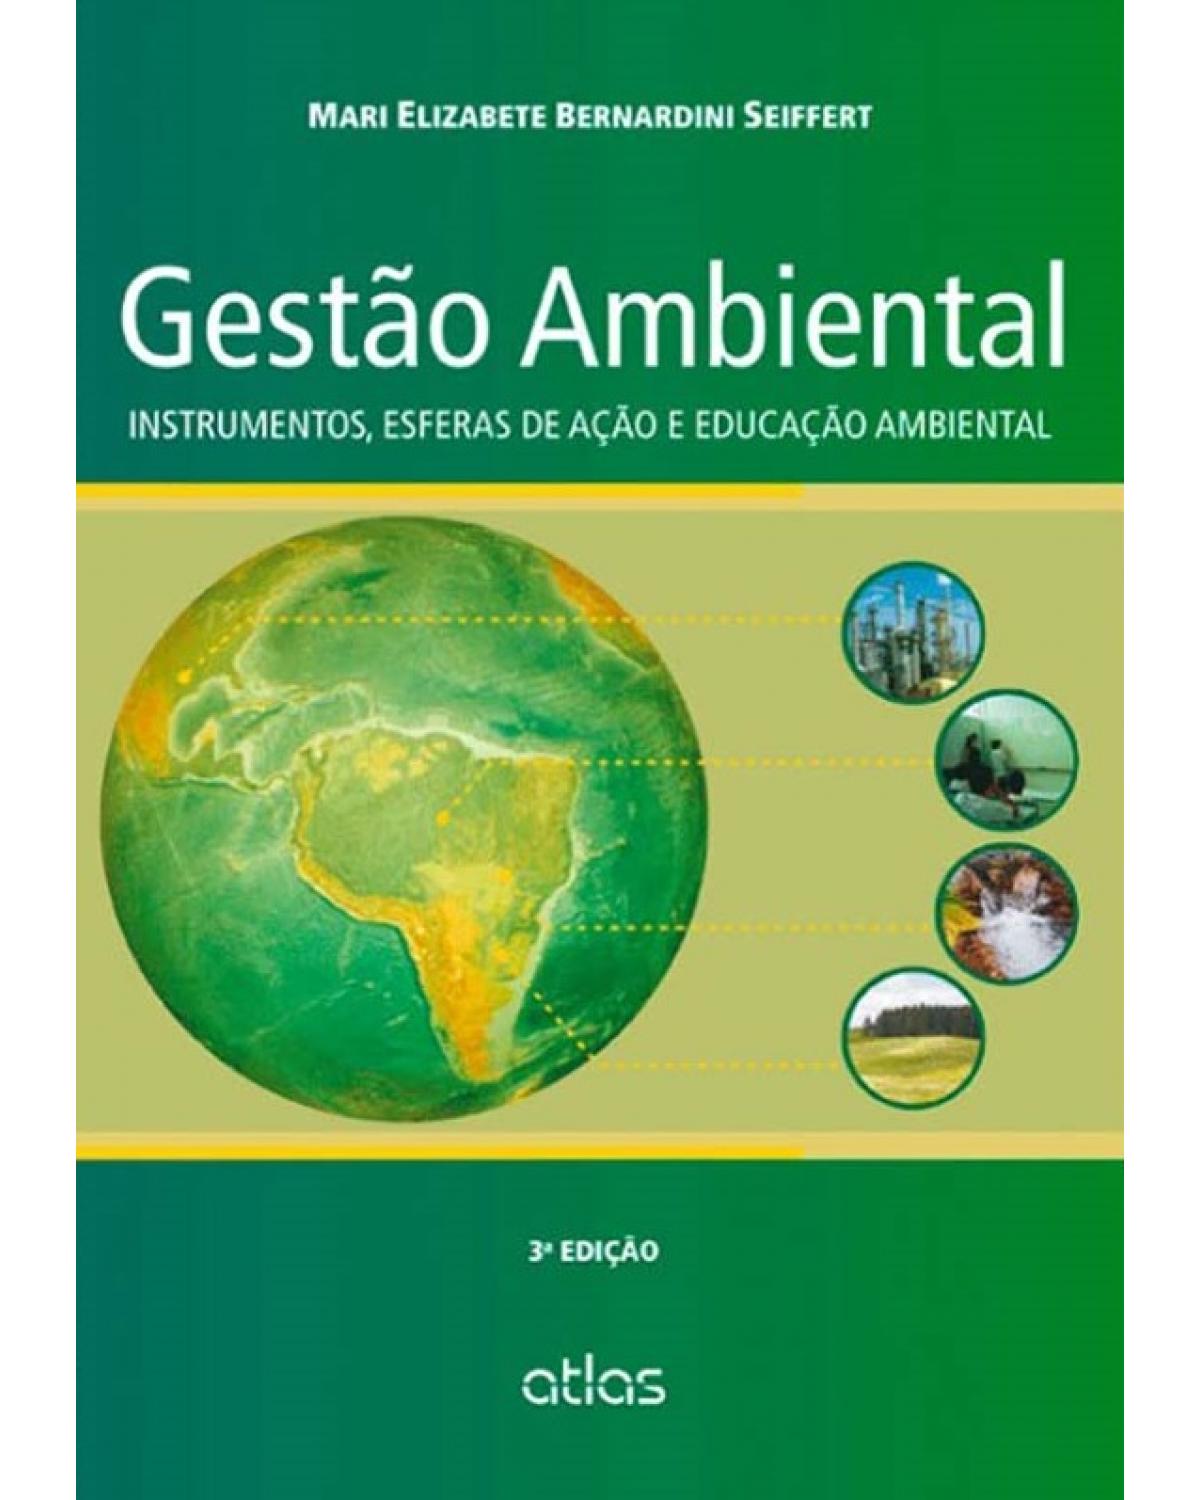 Gestão ambiental - Instrumentos, esferas de ação e educação ambiental - 3ª Edição | 2014